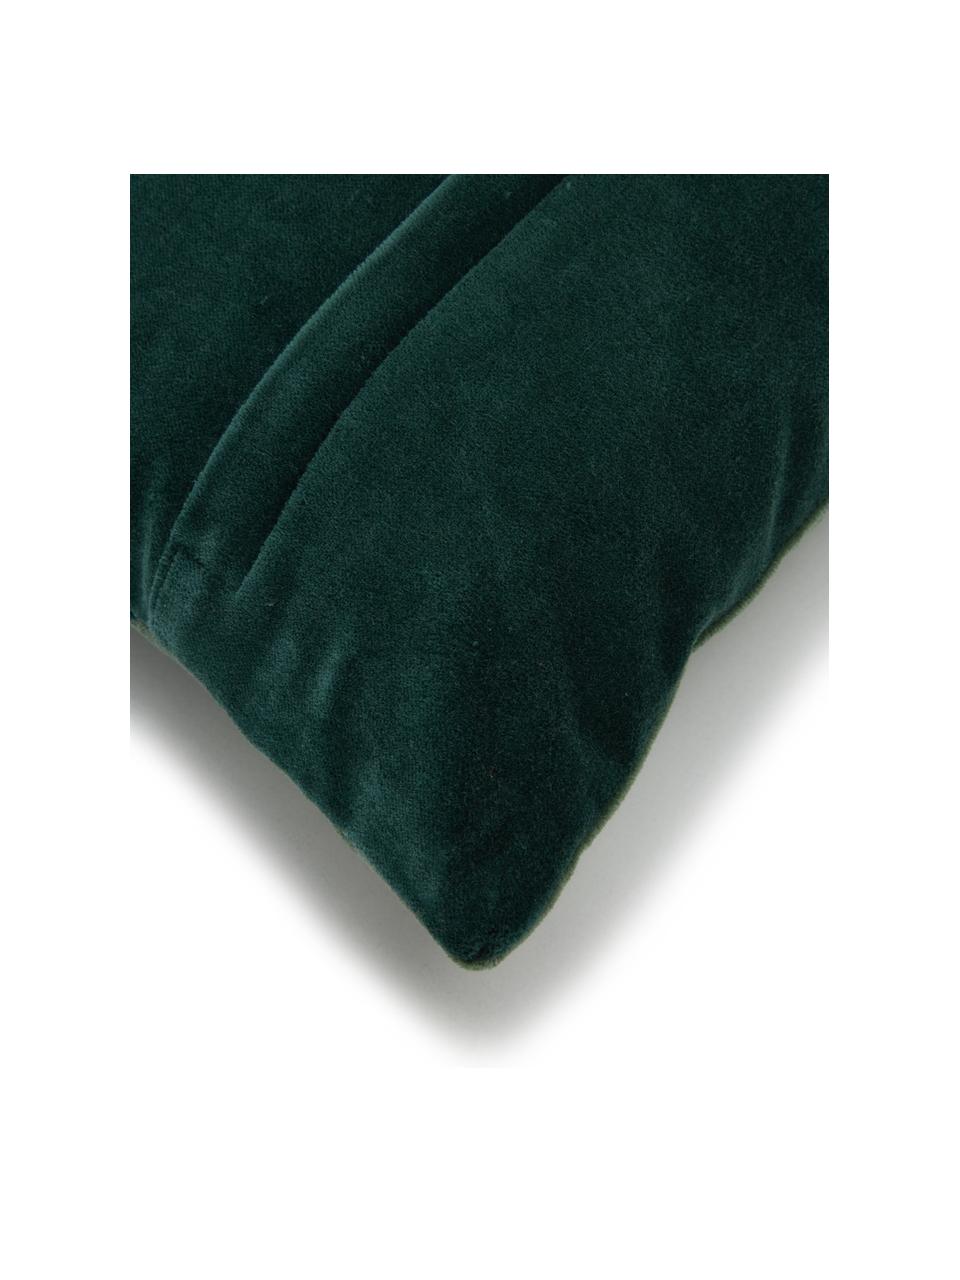 Cojín de terciopelo Patchwork, con relleno, Funda: 100% terciopelo de algodó, Verde, An 30 x L 50 cm